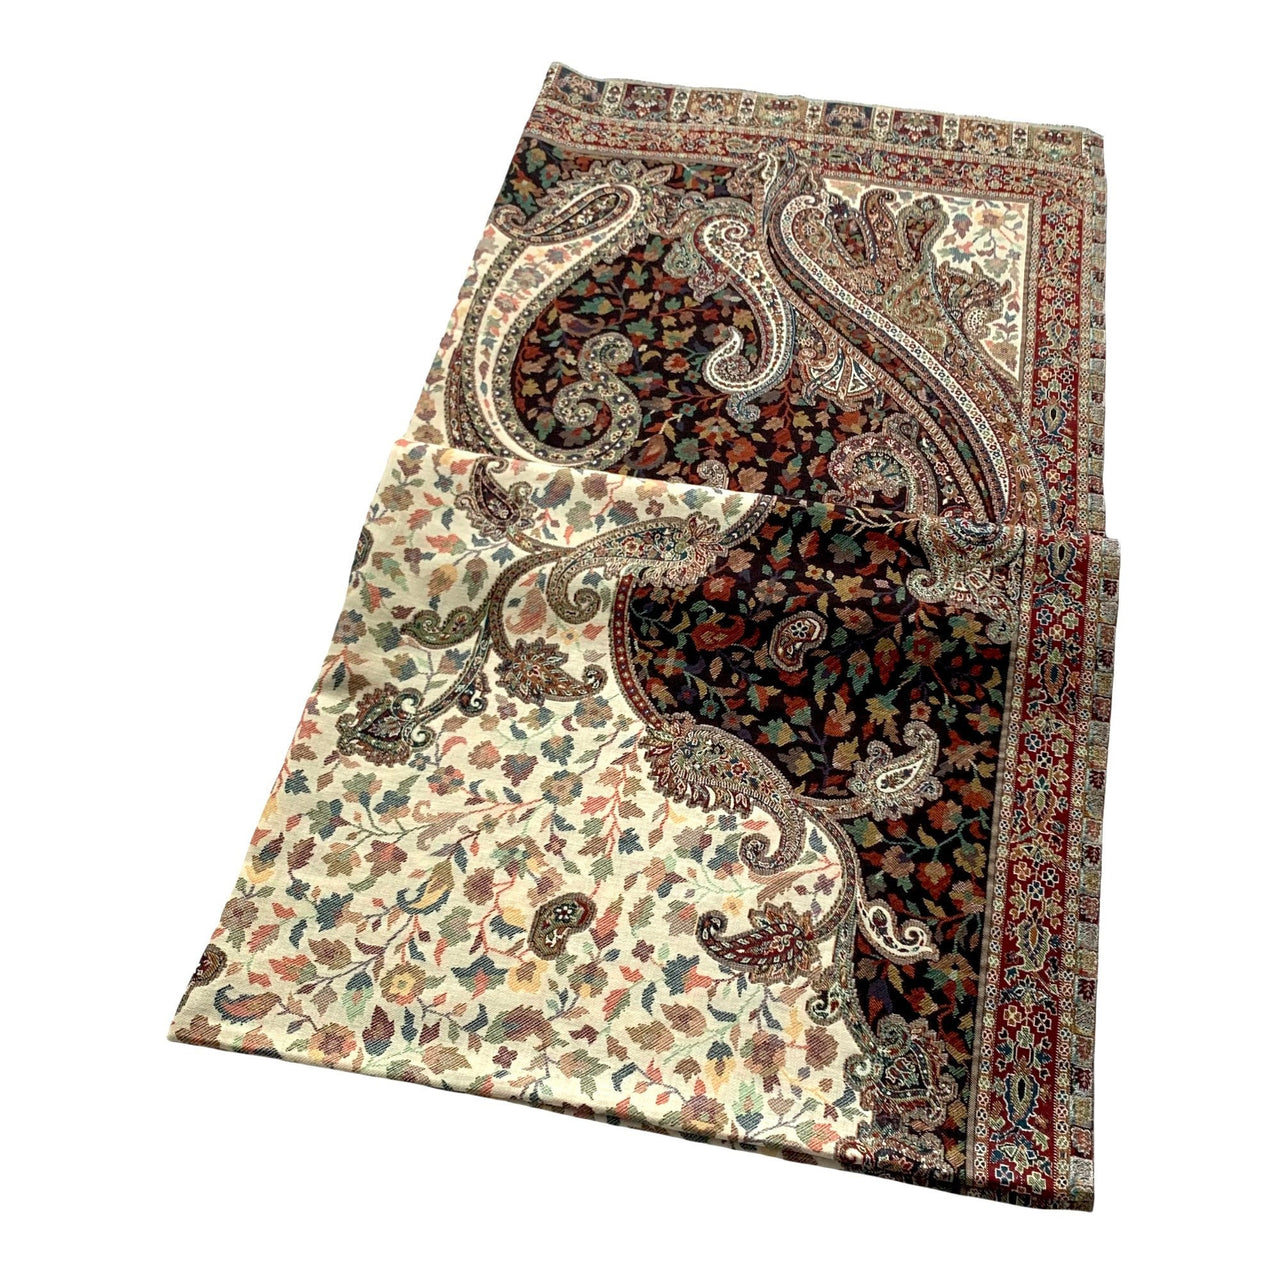 Gorgeous Paisley design Kani Wool Pashmina Shawl Wrap Throw Blanket